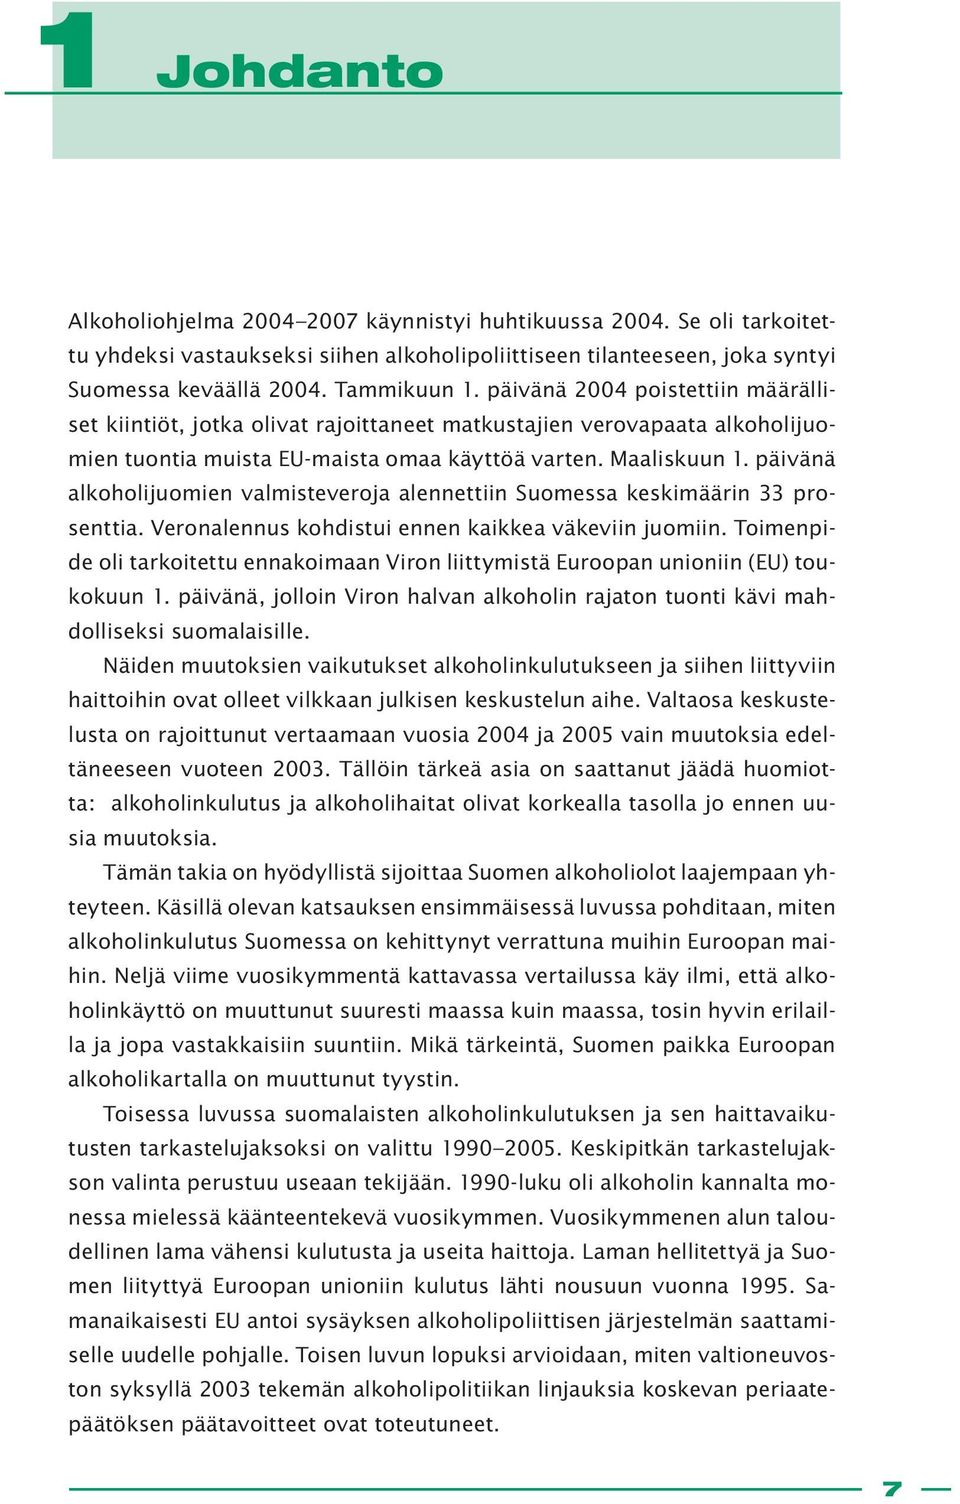 päivänä alkoholijuomien valmisteveroja alennettiin Suomessa keskimäärin 33 prosenttia. Veronalennus kohdistui ennen kaikkea väkeviin juomiin.